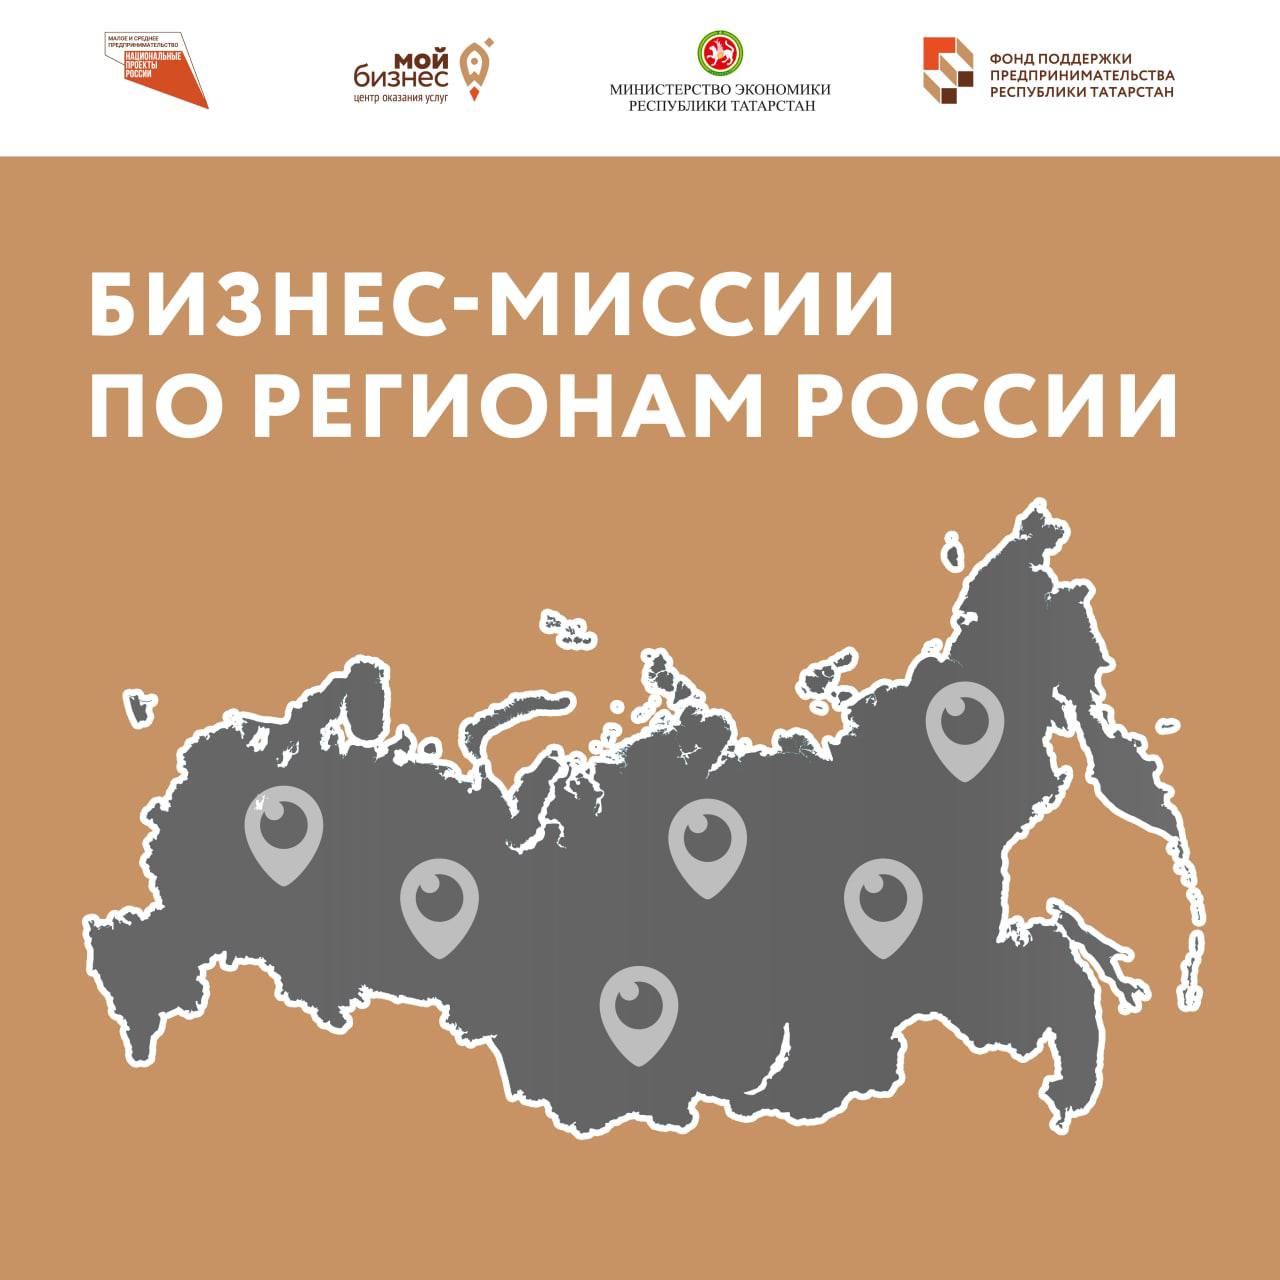 Участвуйте в бизнес-миссиях по регионам России